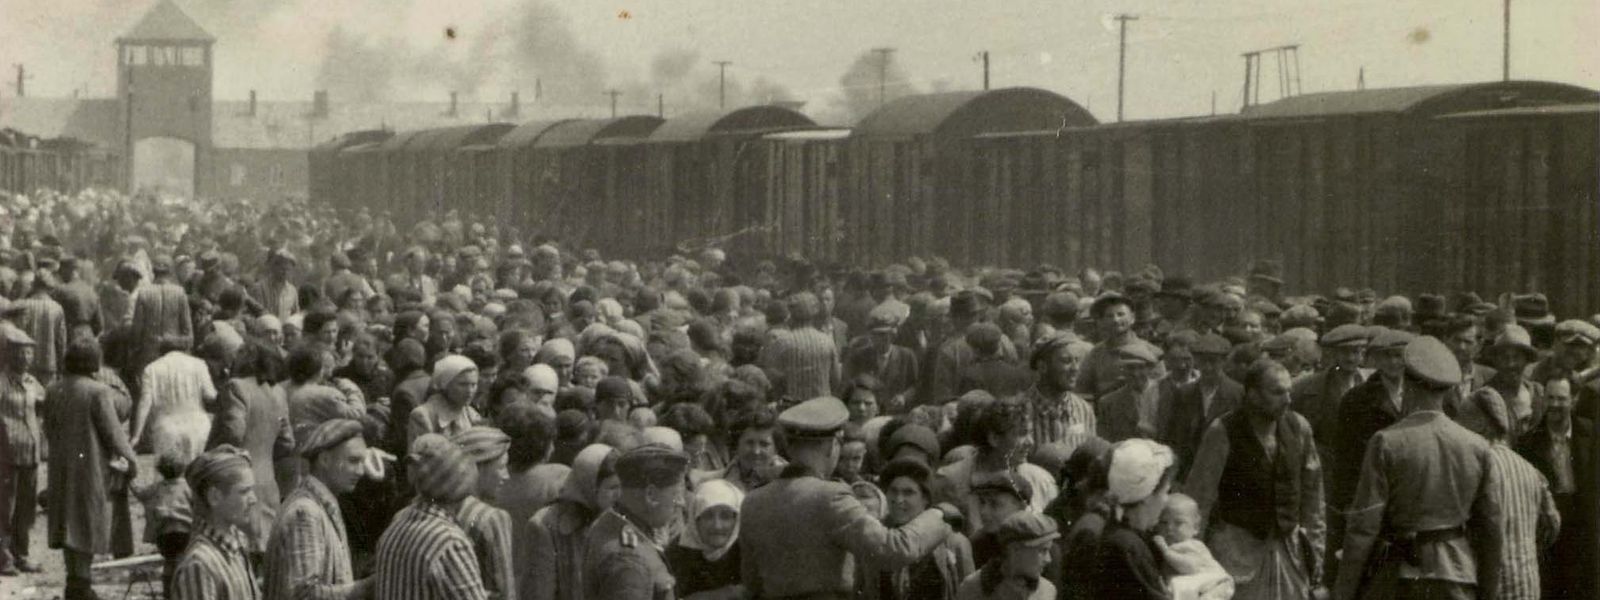 Bei der Ankunft im Konzentrationslager werden die Opfer "selektiert". Ein Teil von ihnen geht direkt in die Gaskammern. Kein Vergleich zur heutigen Situation von Impfverweigerern und Verschwörungstheoretikern.